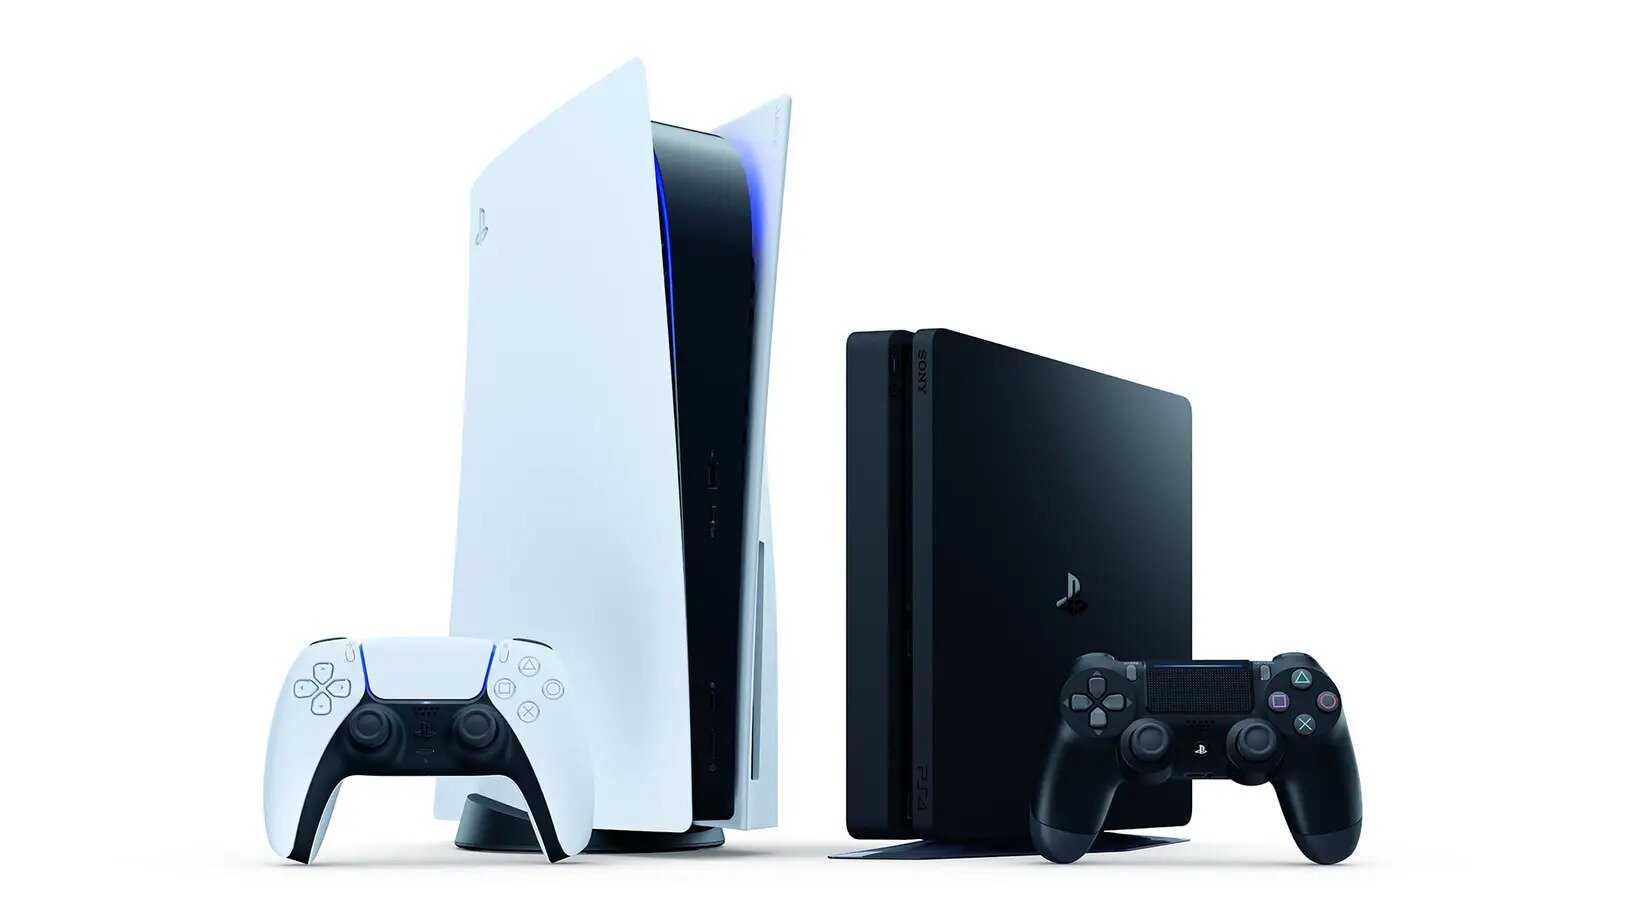 Η νέα ενημέρωση για το PlayStation 5 θα φέρει την υποστήριξη φωνητικών εντολών